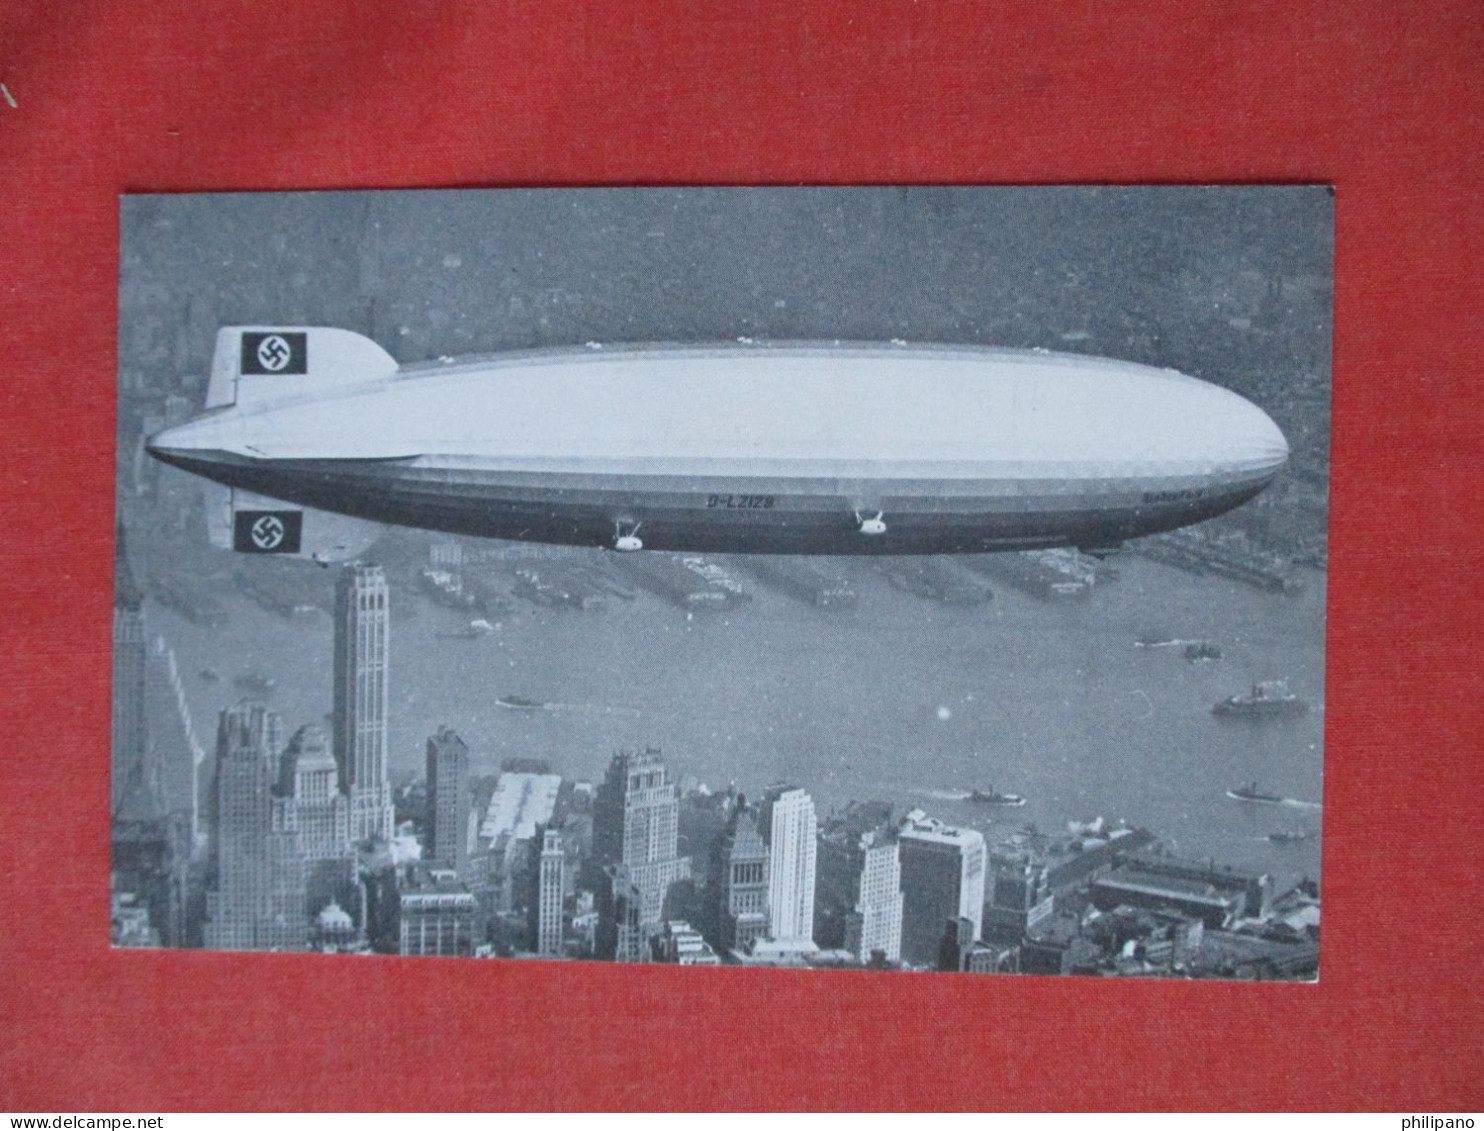 Hindenburg.   Airship  Rubber City Stamp Club Akron Ohio.  Zeppelin Ref 6404 - Luchtschepen